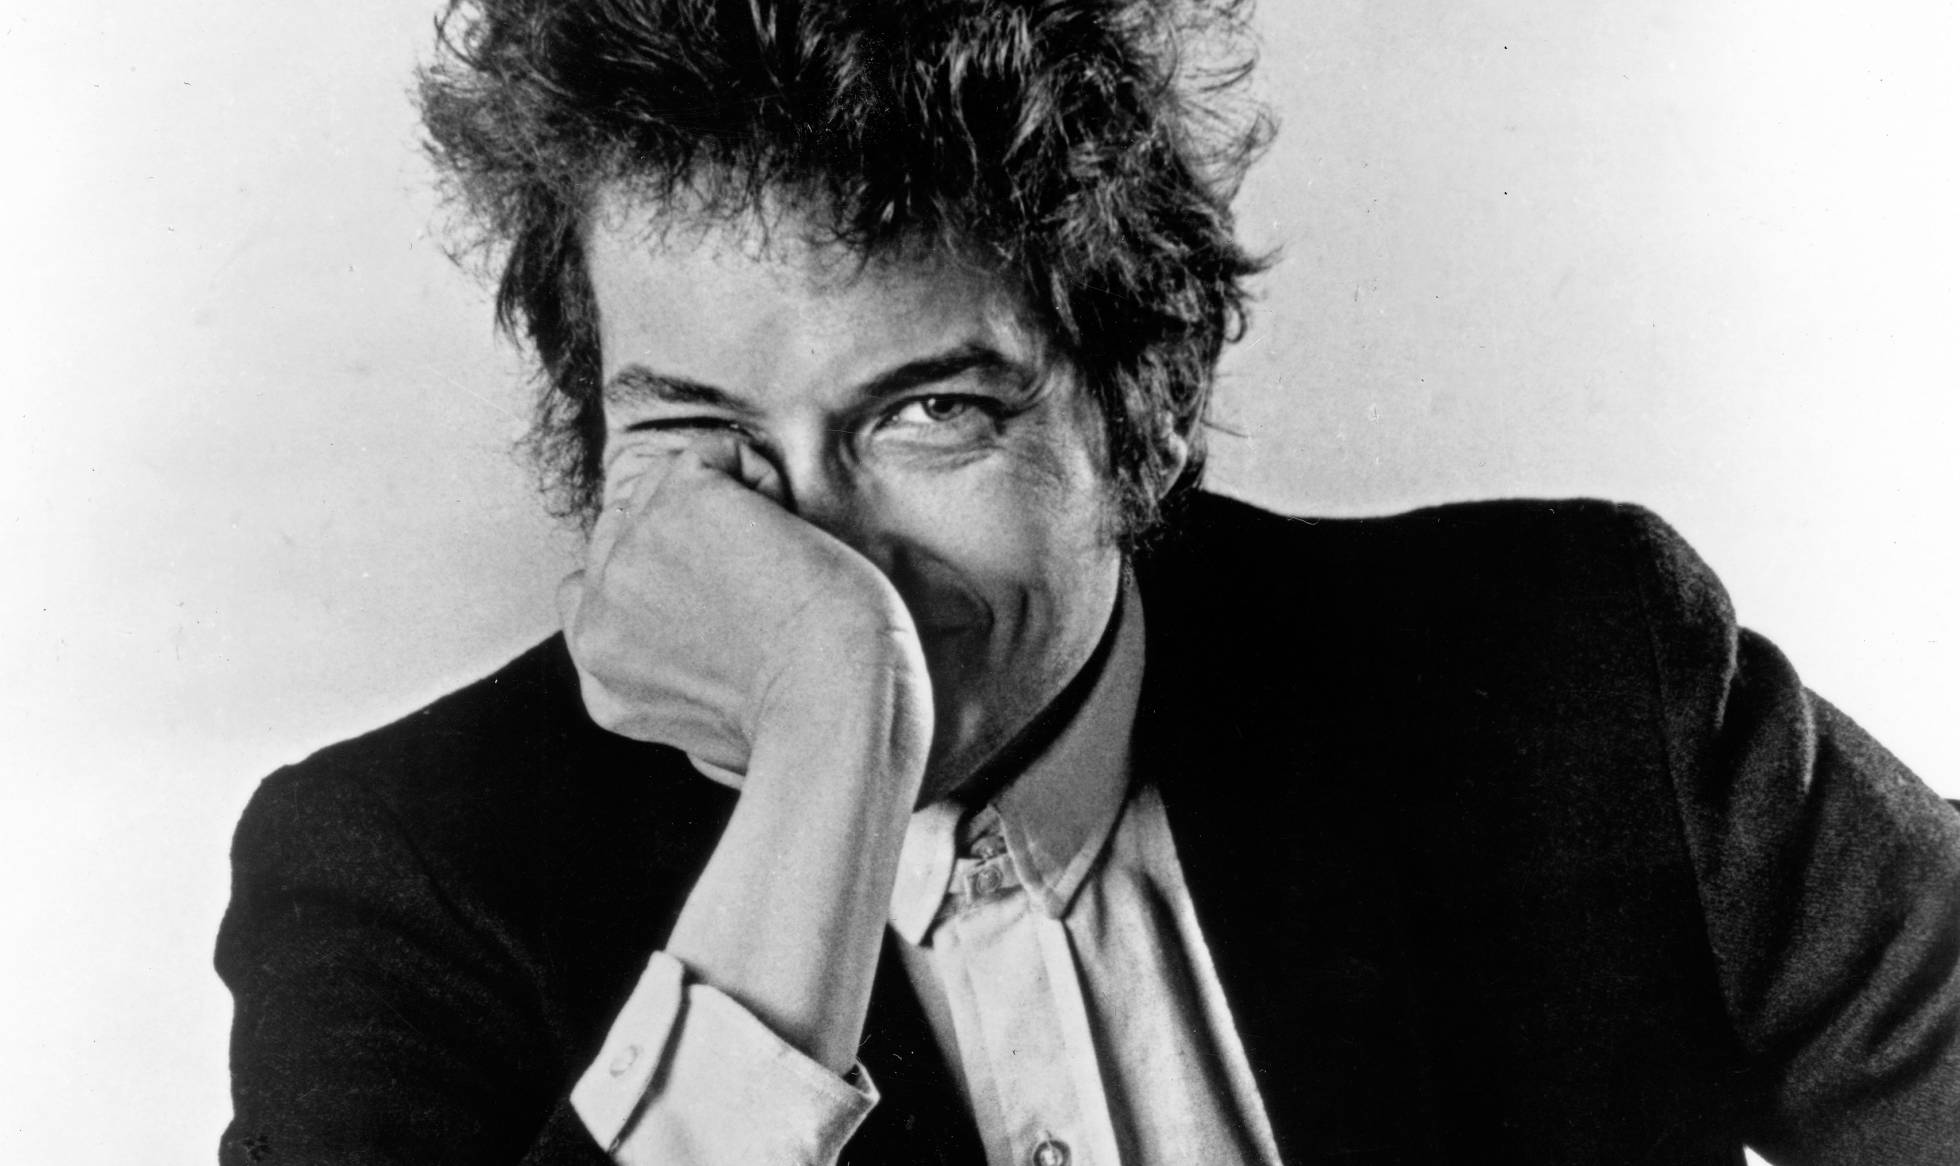 Fotos: La historia de 25 imágenes de Bob Dylan en la intimidad | Cultura |  EL PAÍS